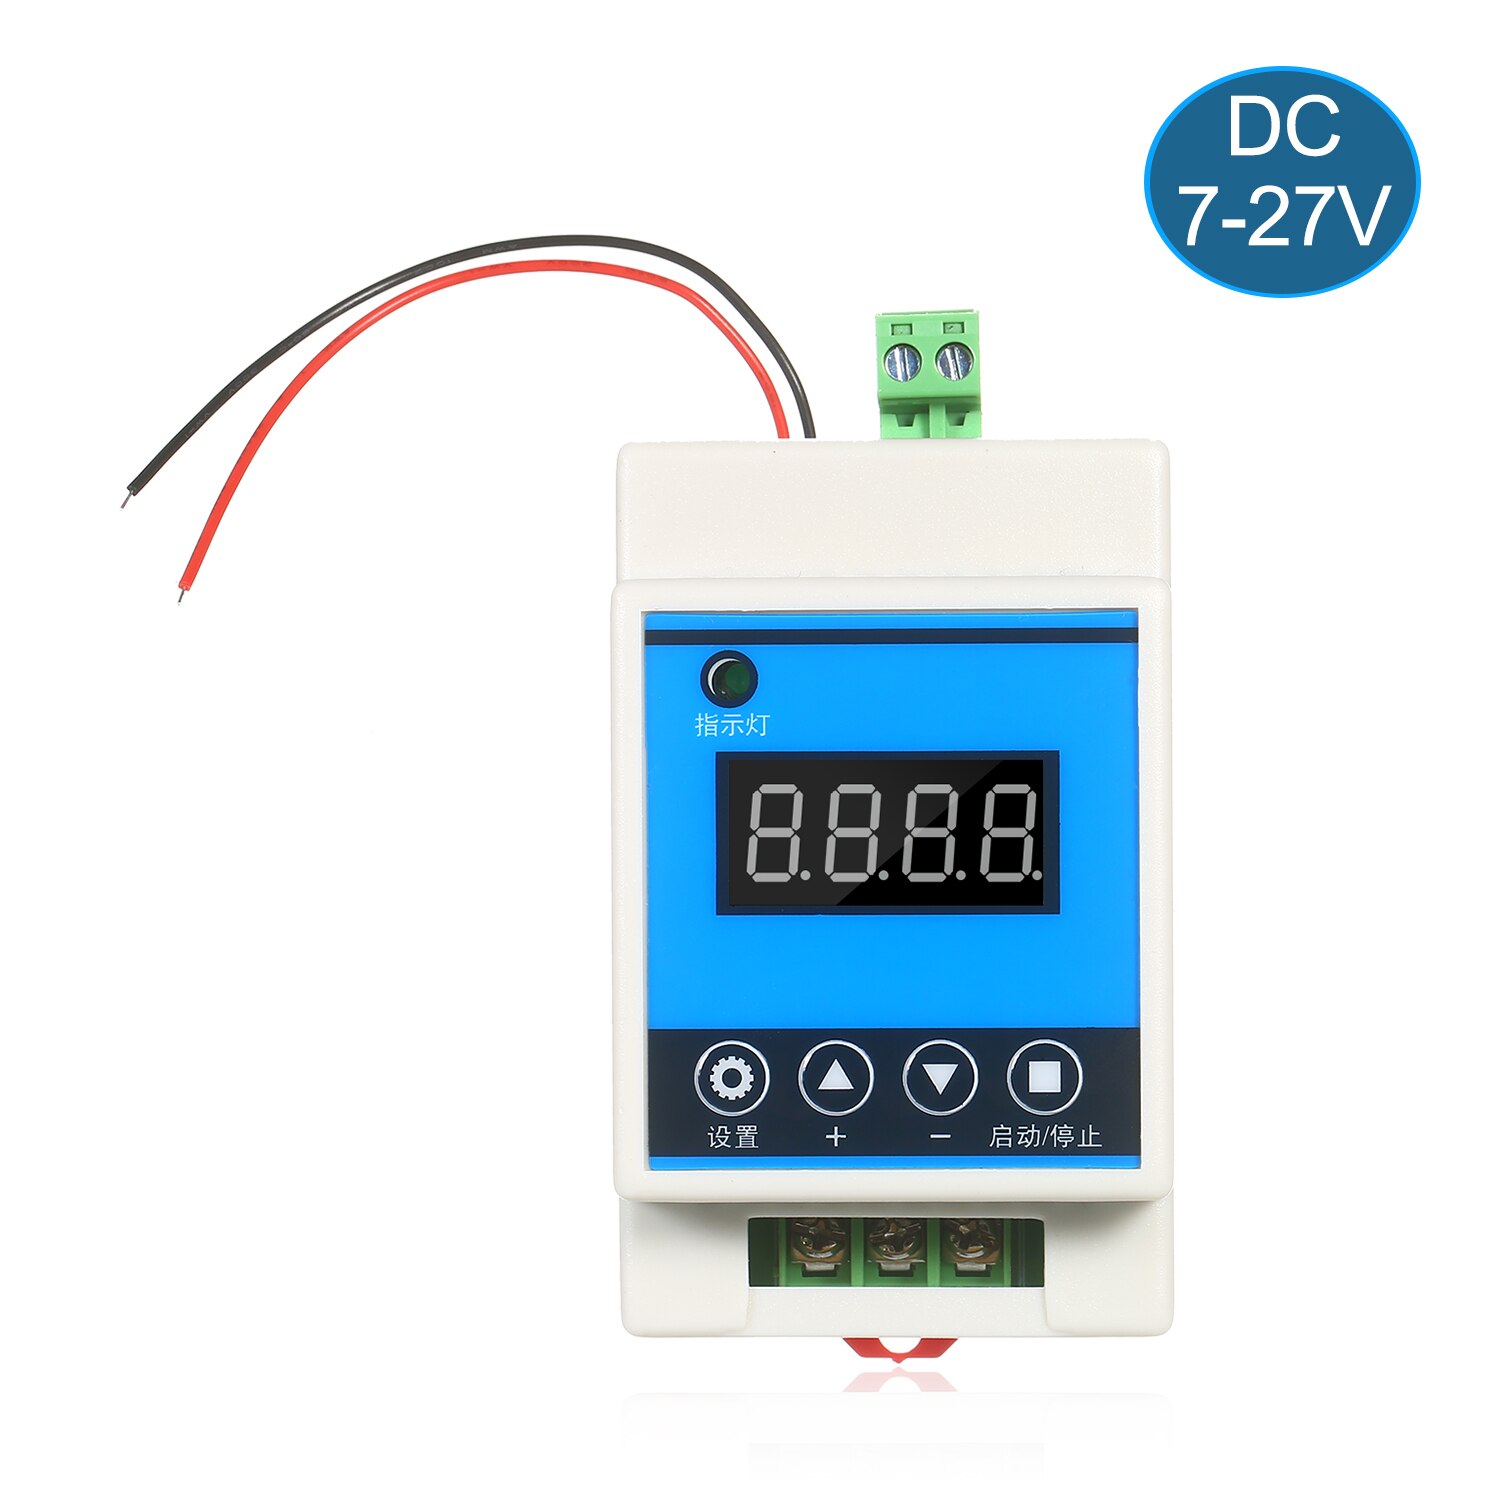 Dc 7-27V Digitale Vertraging Timer Schakelaar Relaismodule 0.01S-999Min Timing Bereik Voor smart Home Industriële Controle Relais Modul